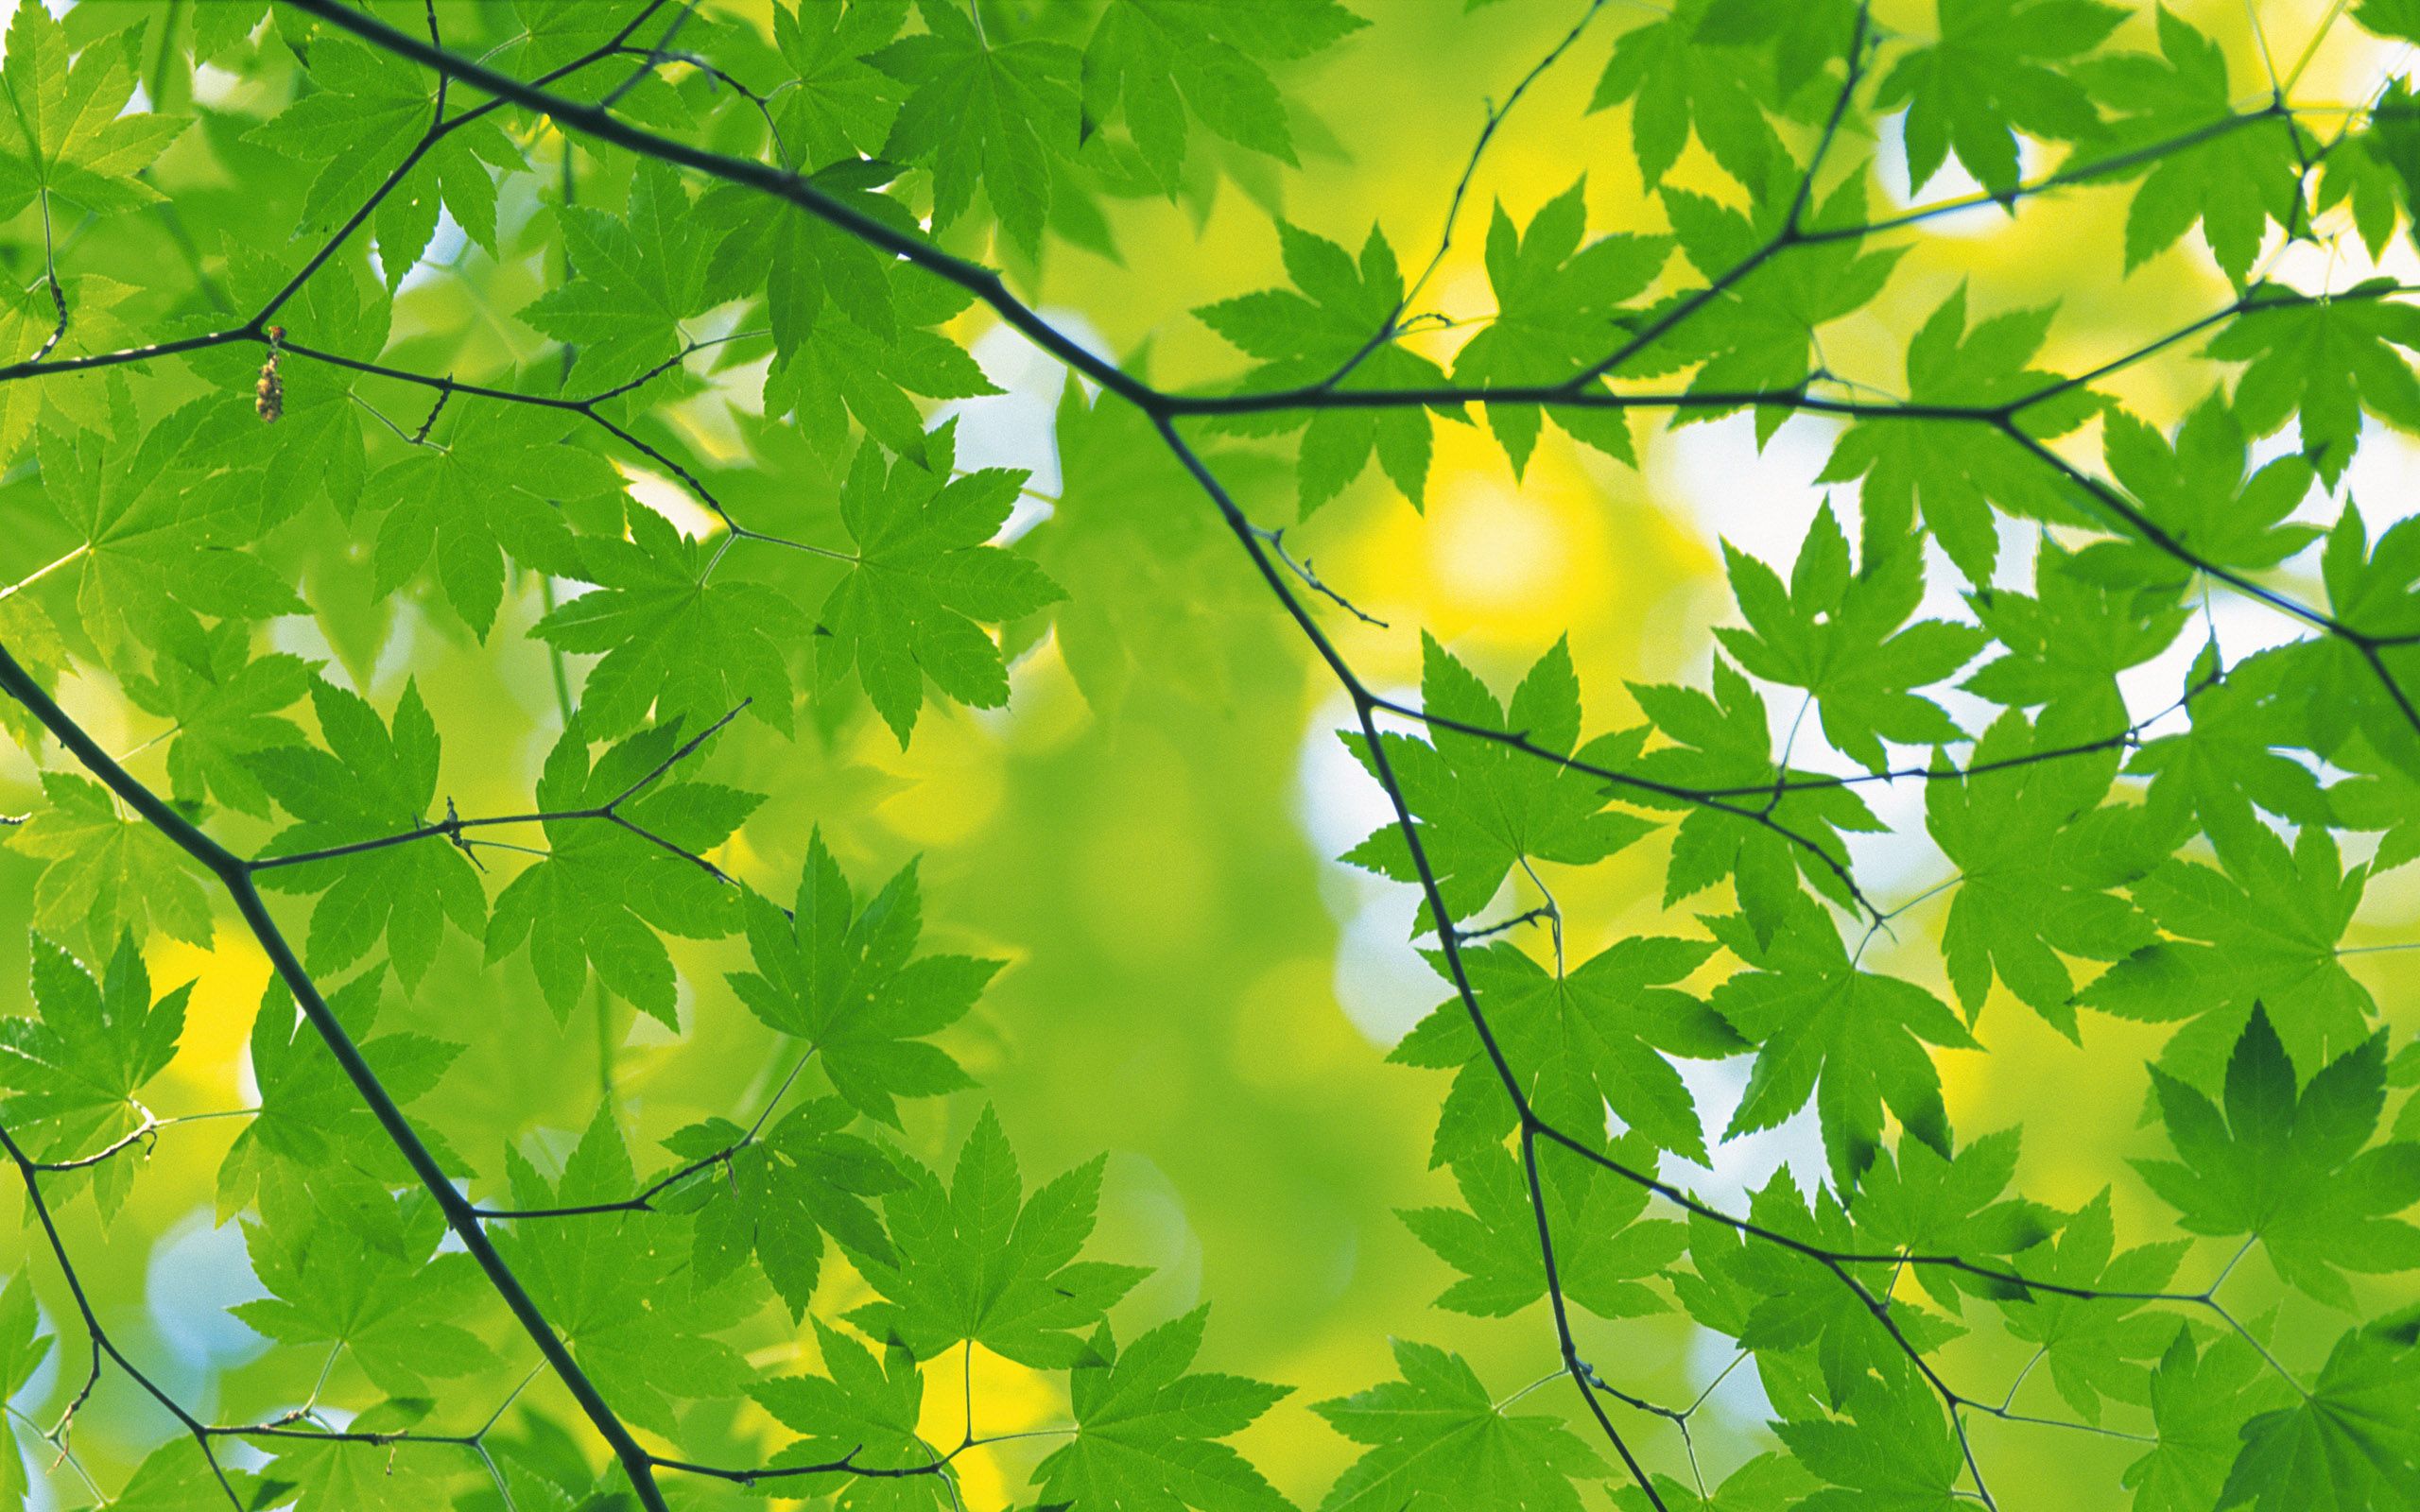 Green Leaf Background Images  Free Download on Freepik